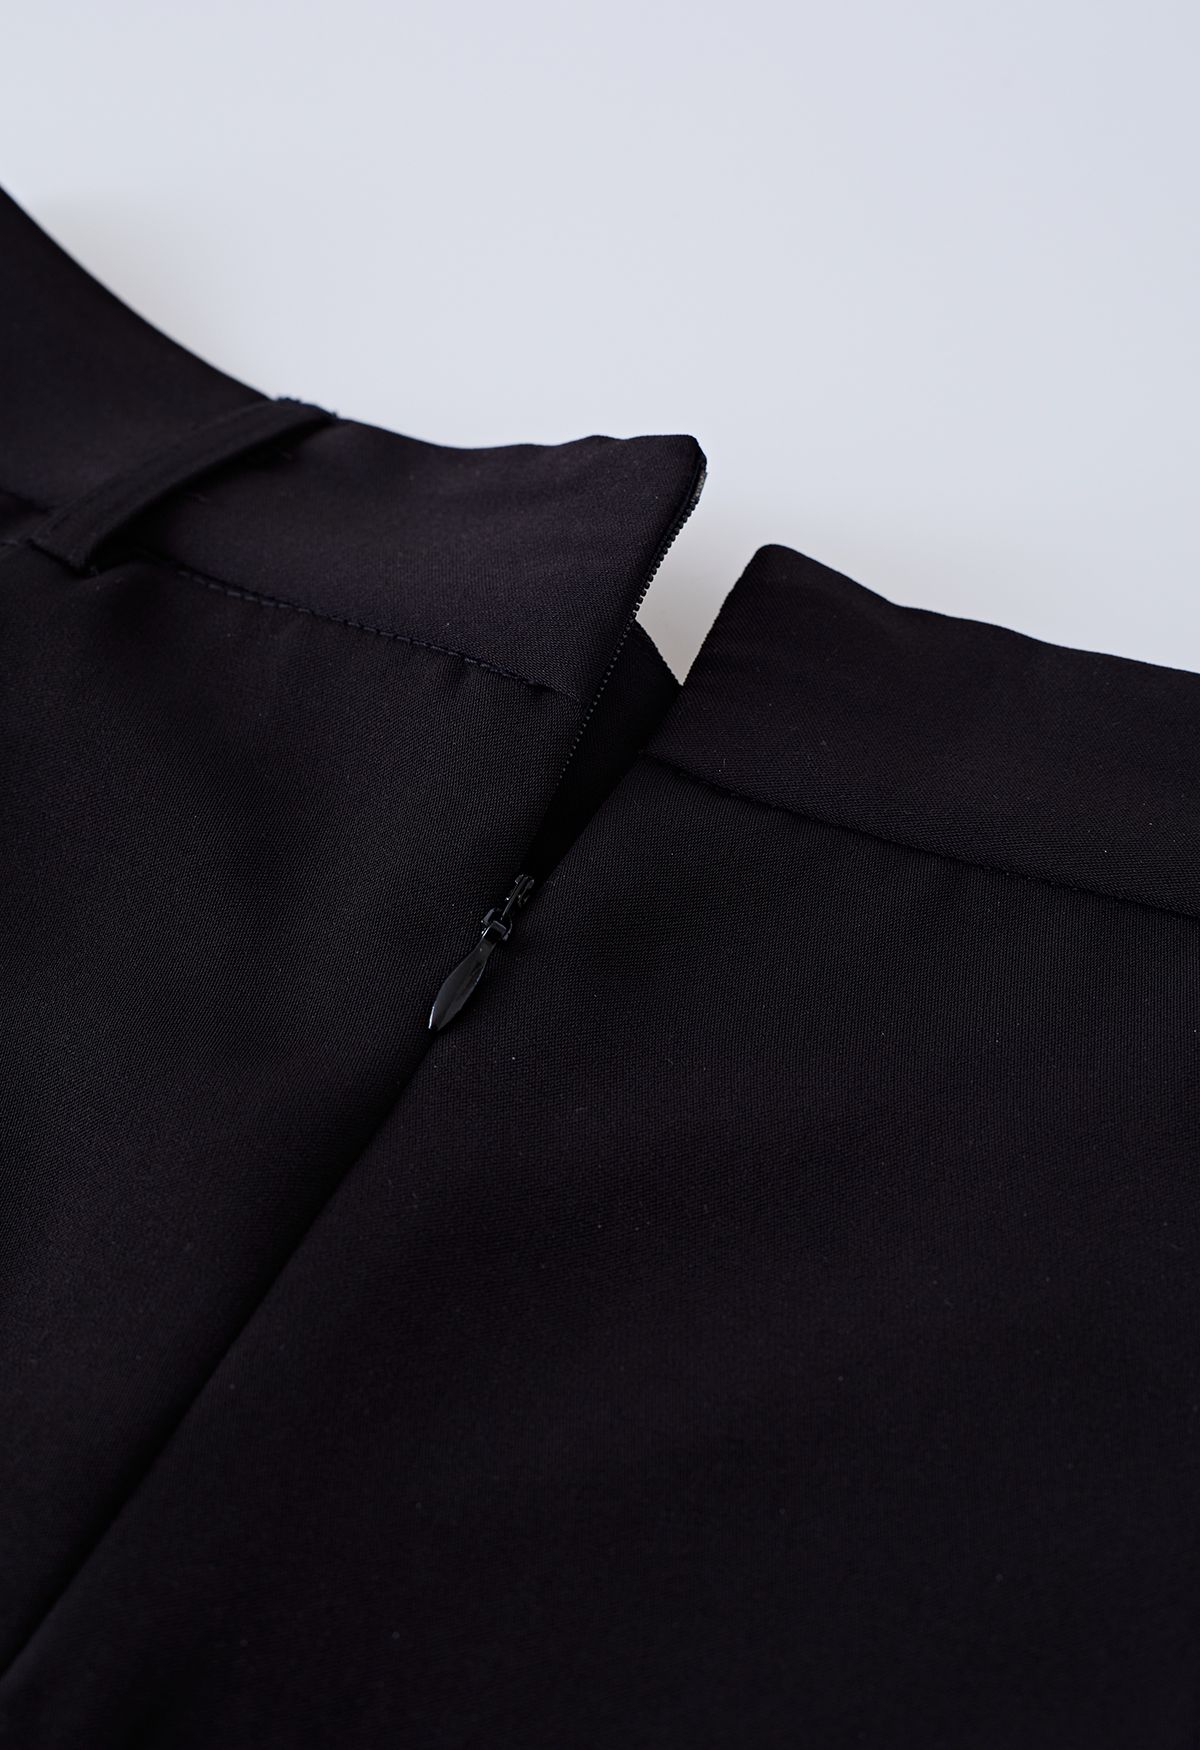 Mesh Spliced Hem Midi Skirt in Black